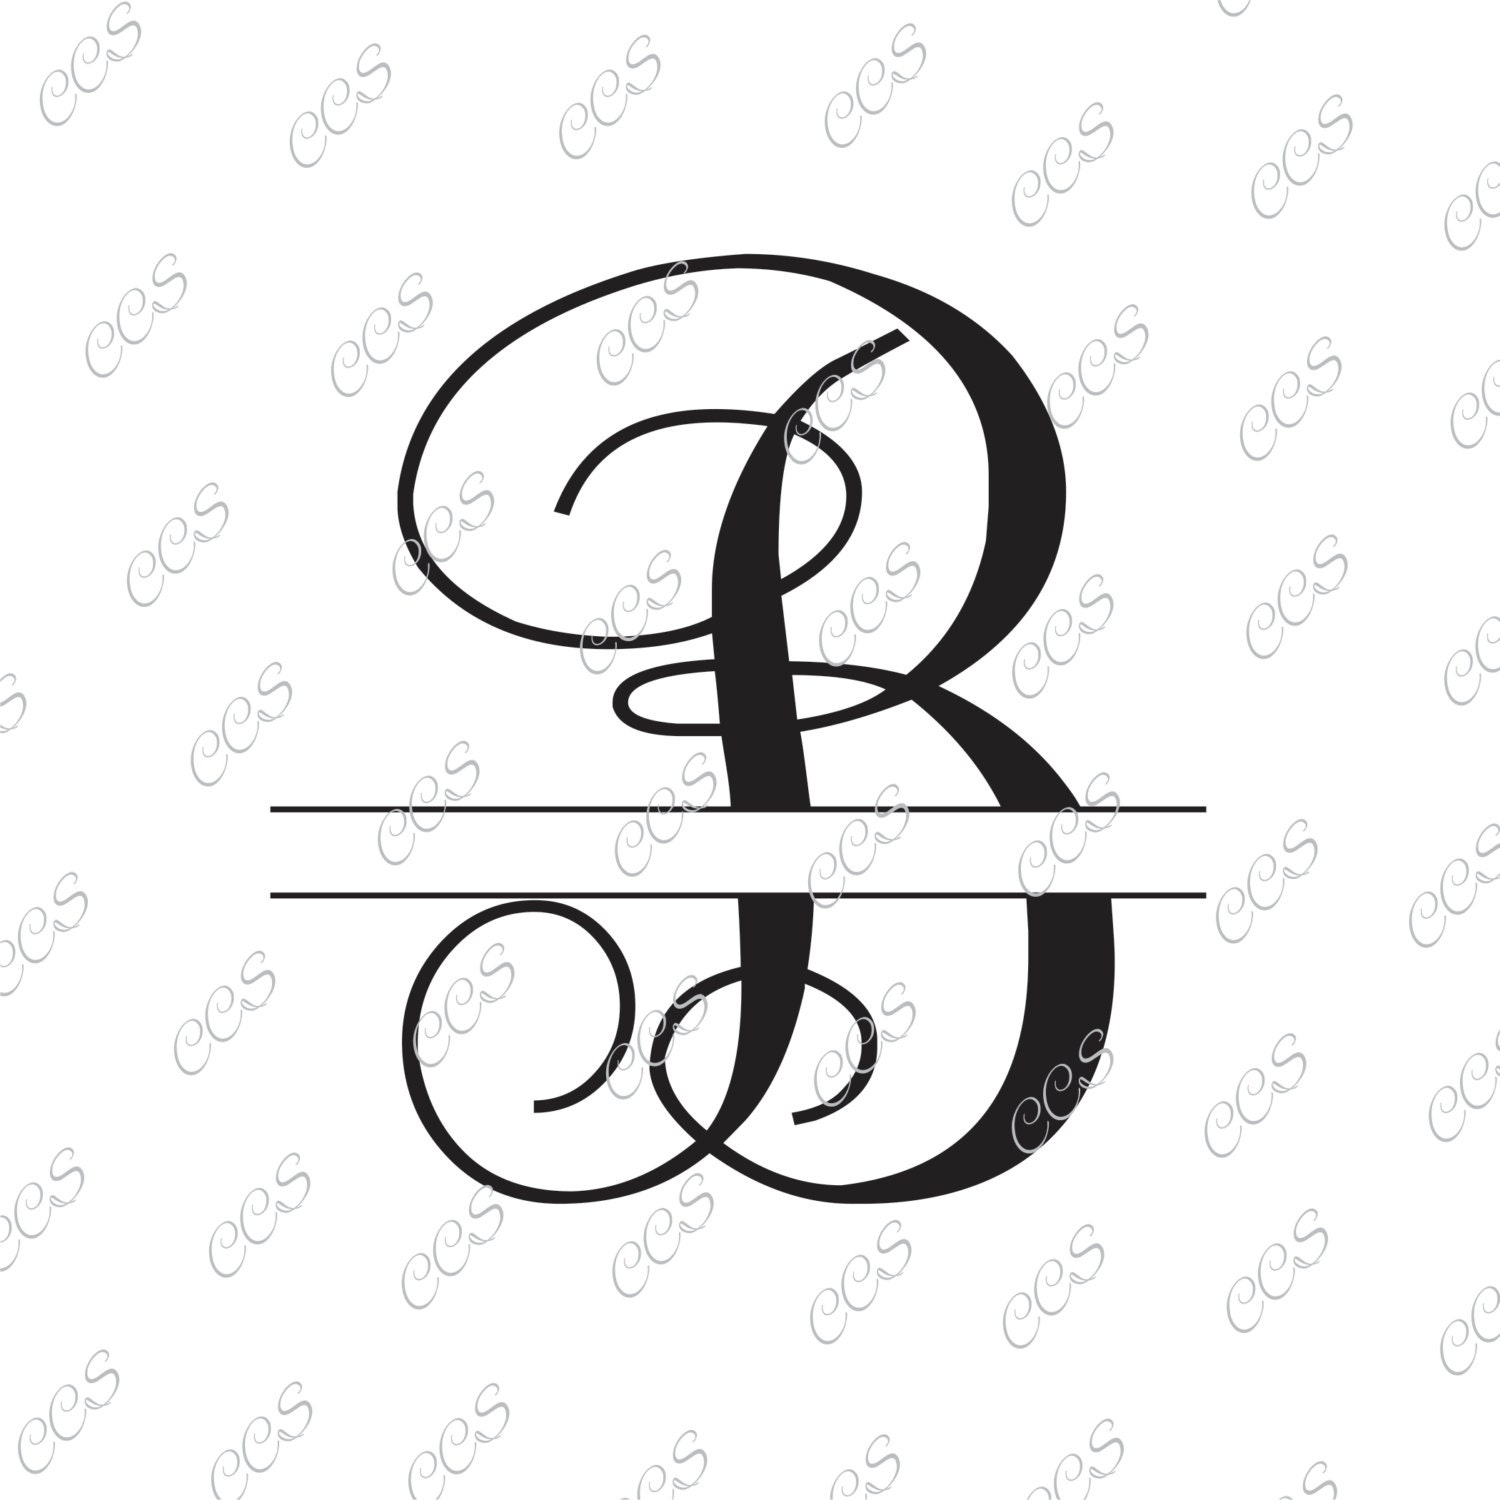 Download Free SVG Cut File - B Split monogram SVG Split letter svg Monogram...